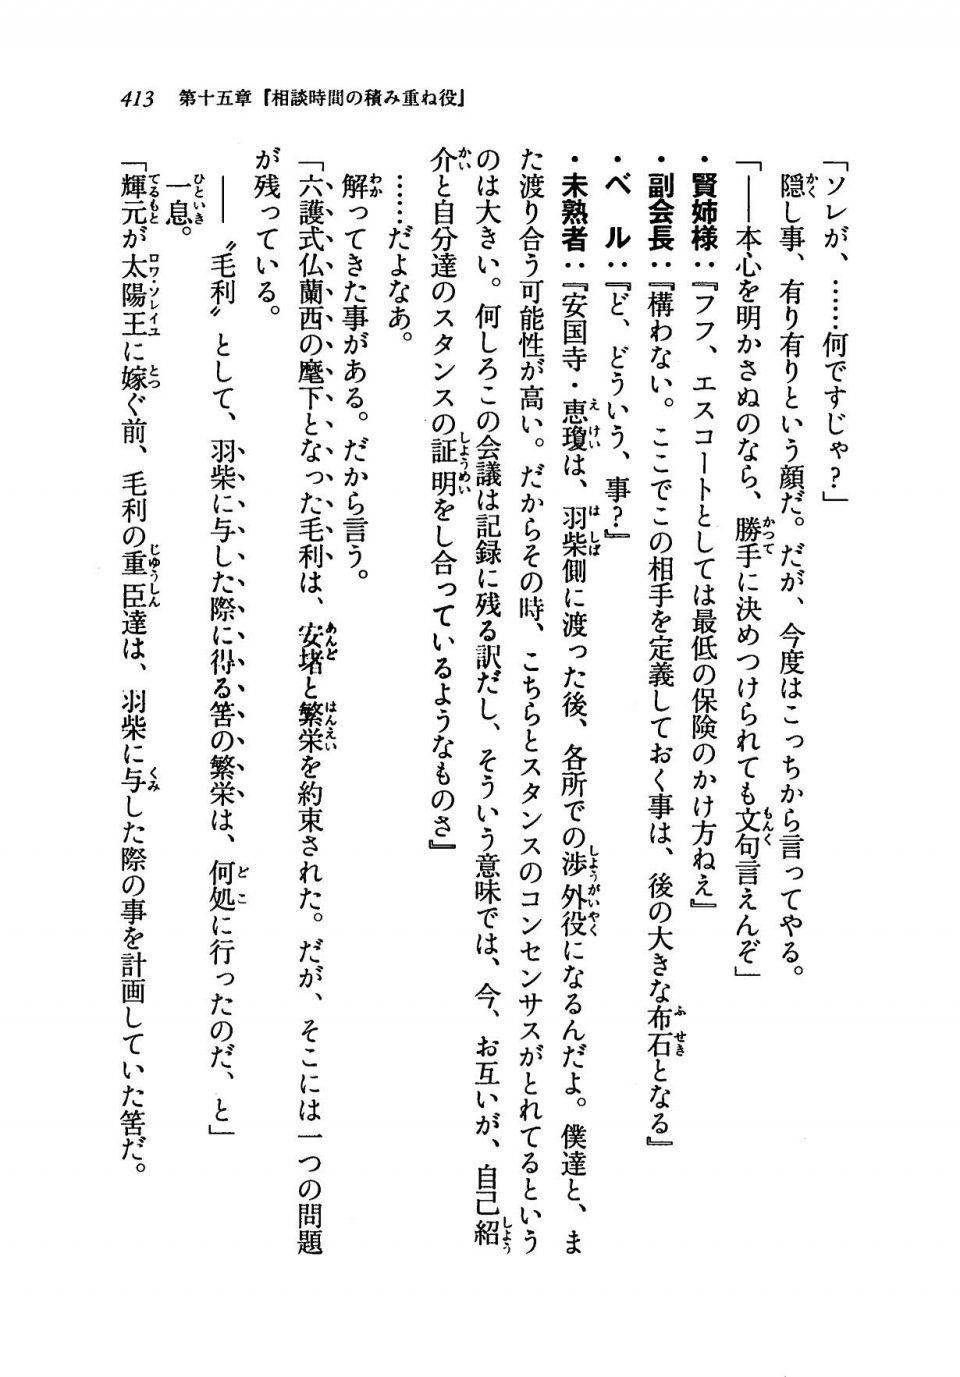 Kyoukai Senjou no Horizon LN Vol 19(8A) - Photo #413